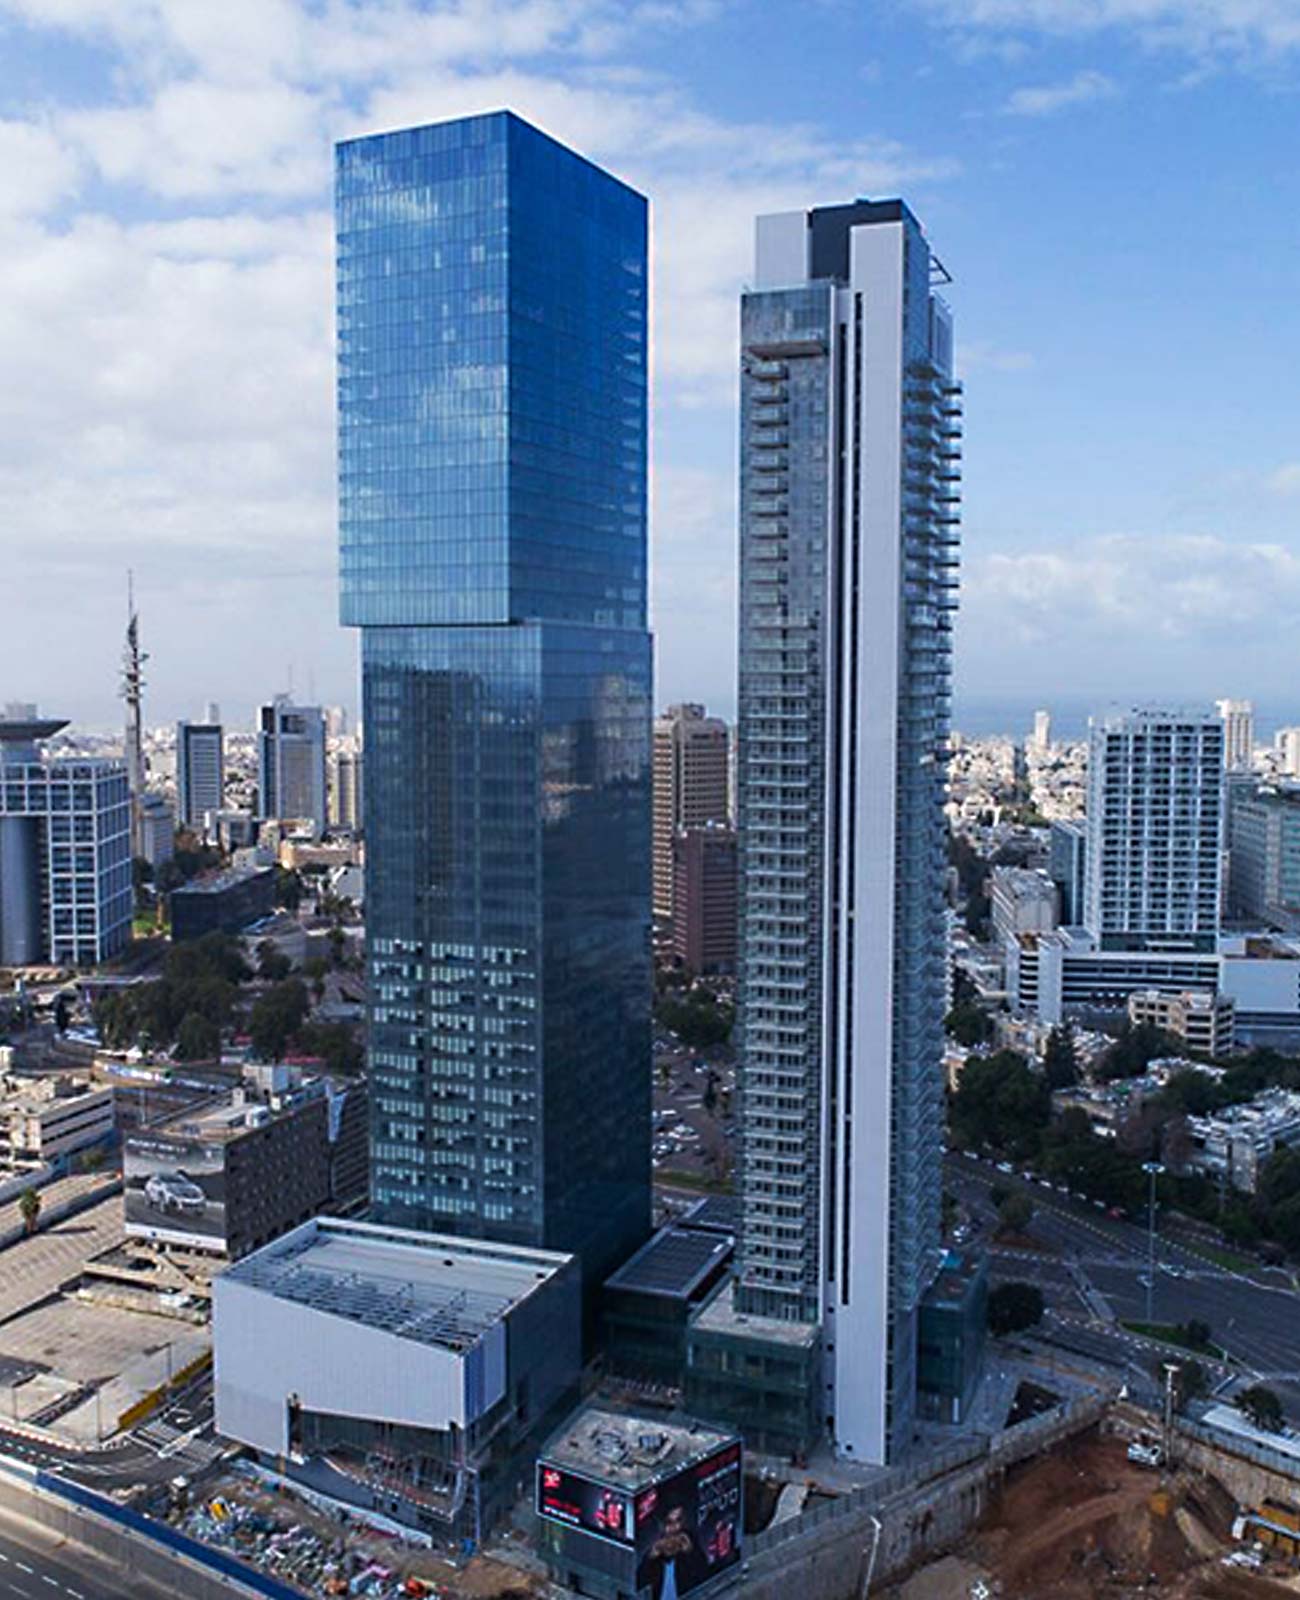 נוף עירוני תל אביבי עם בניין אלקטרה ברקע